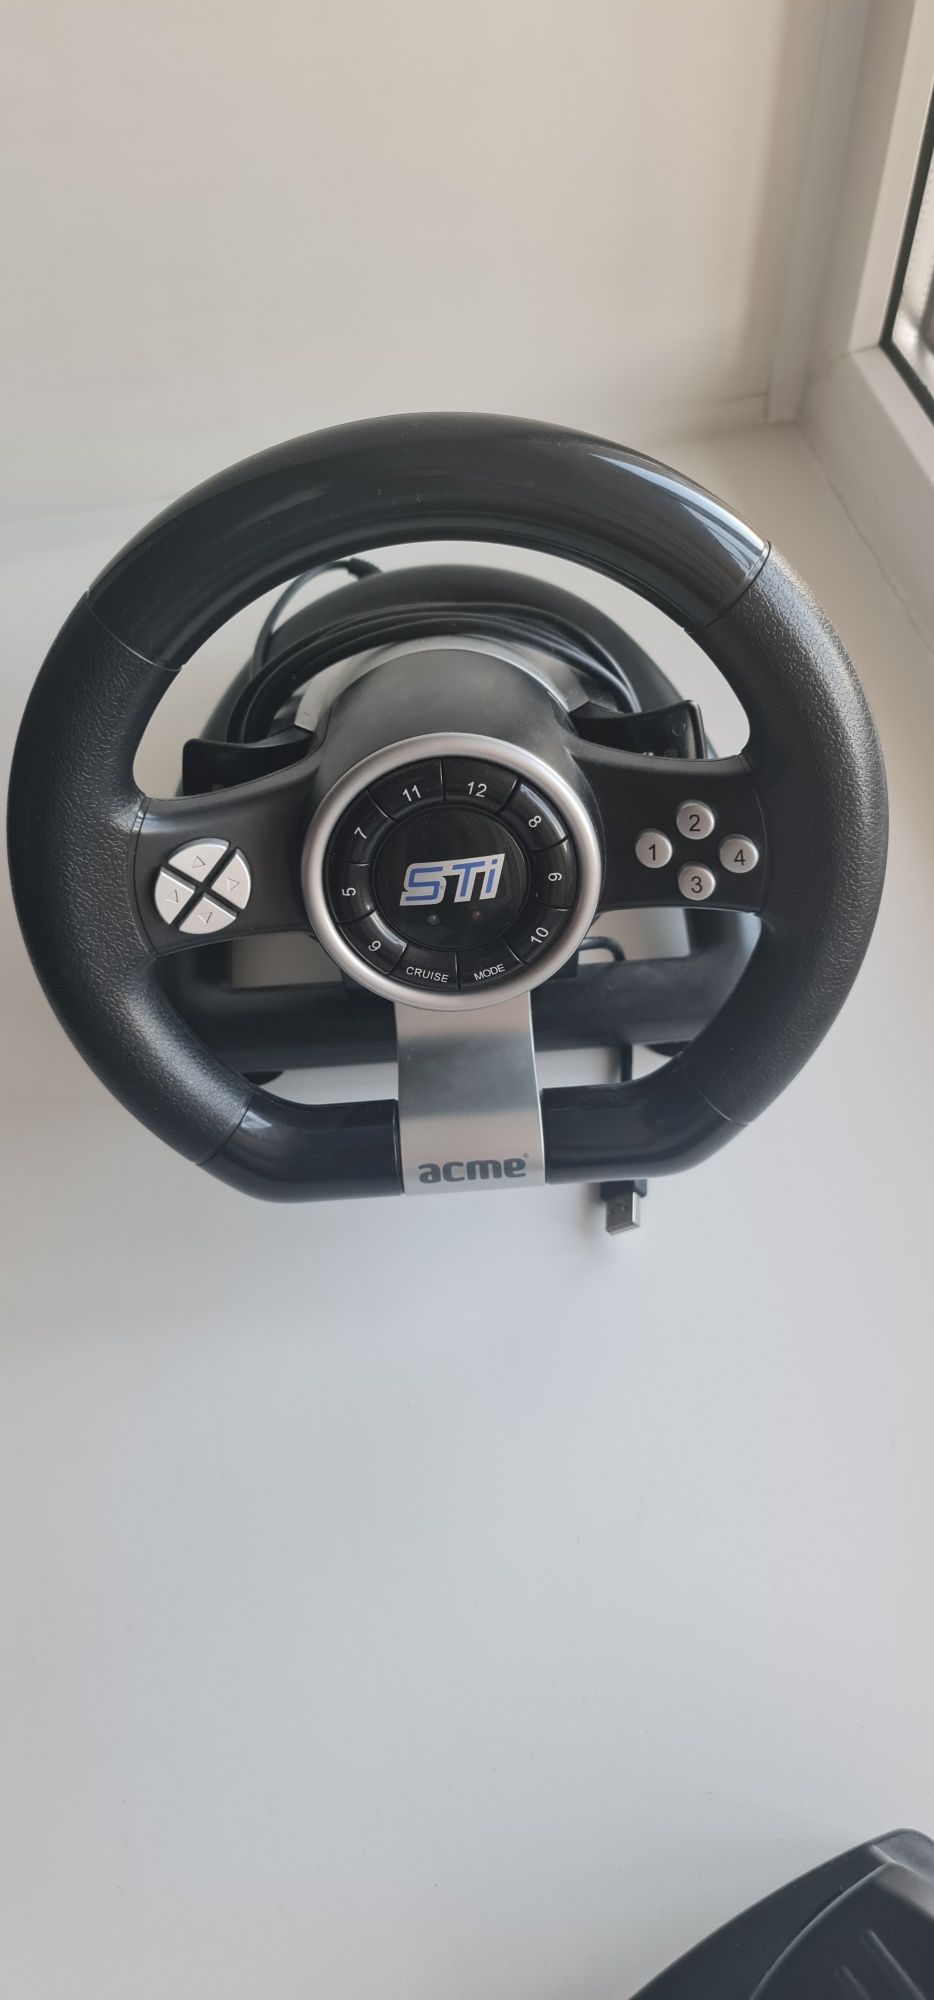 Игровой руль Acme Racing wheel STi +педали